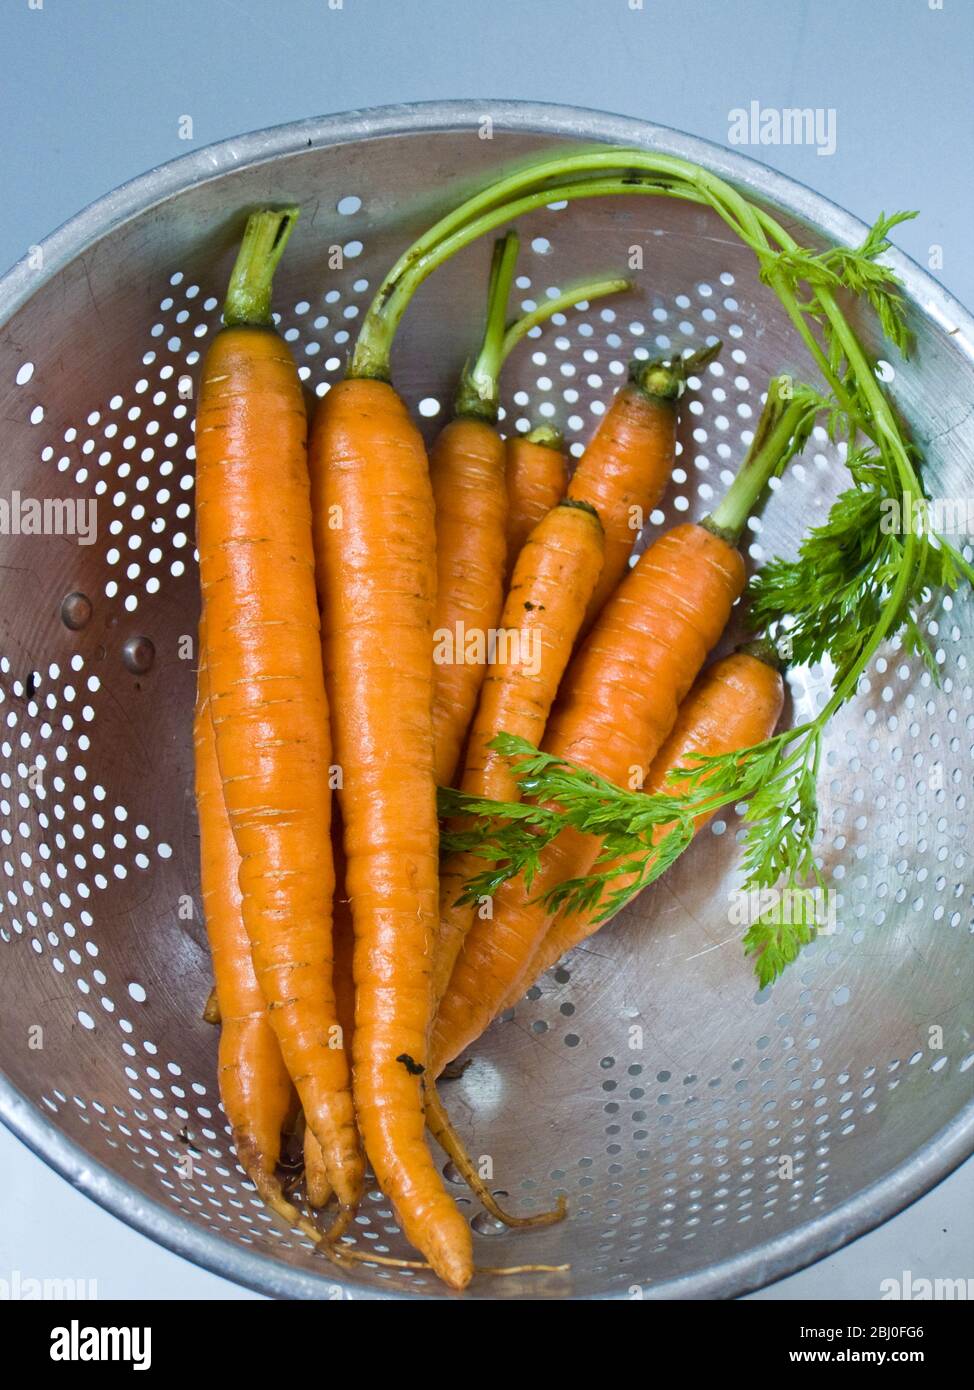 Bund frischer junger Karotten mit Tops, in altem Aluminiumsieb abtropfen lassen - Stockfoto